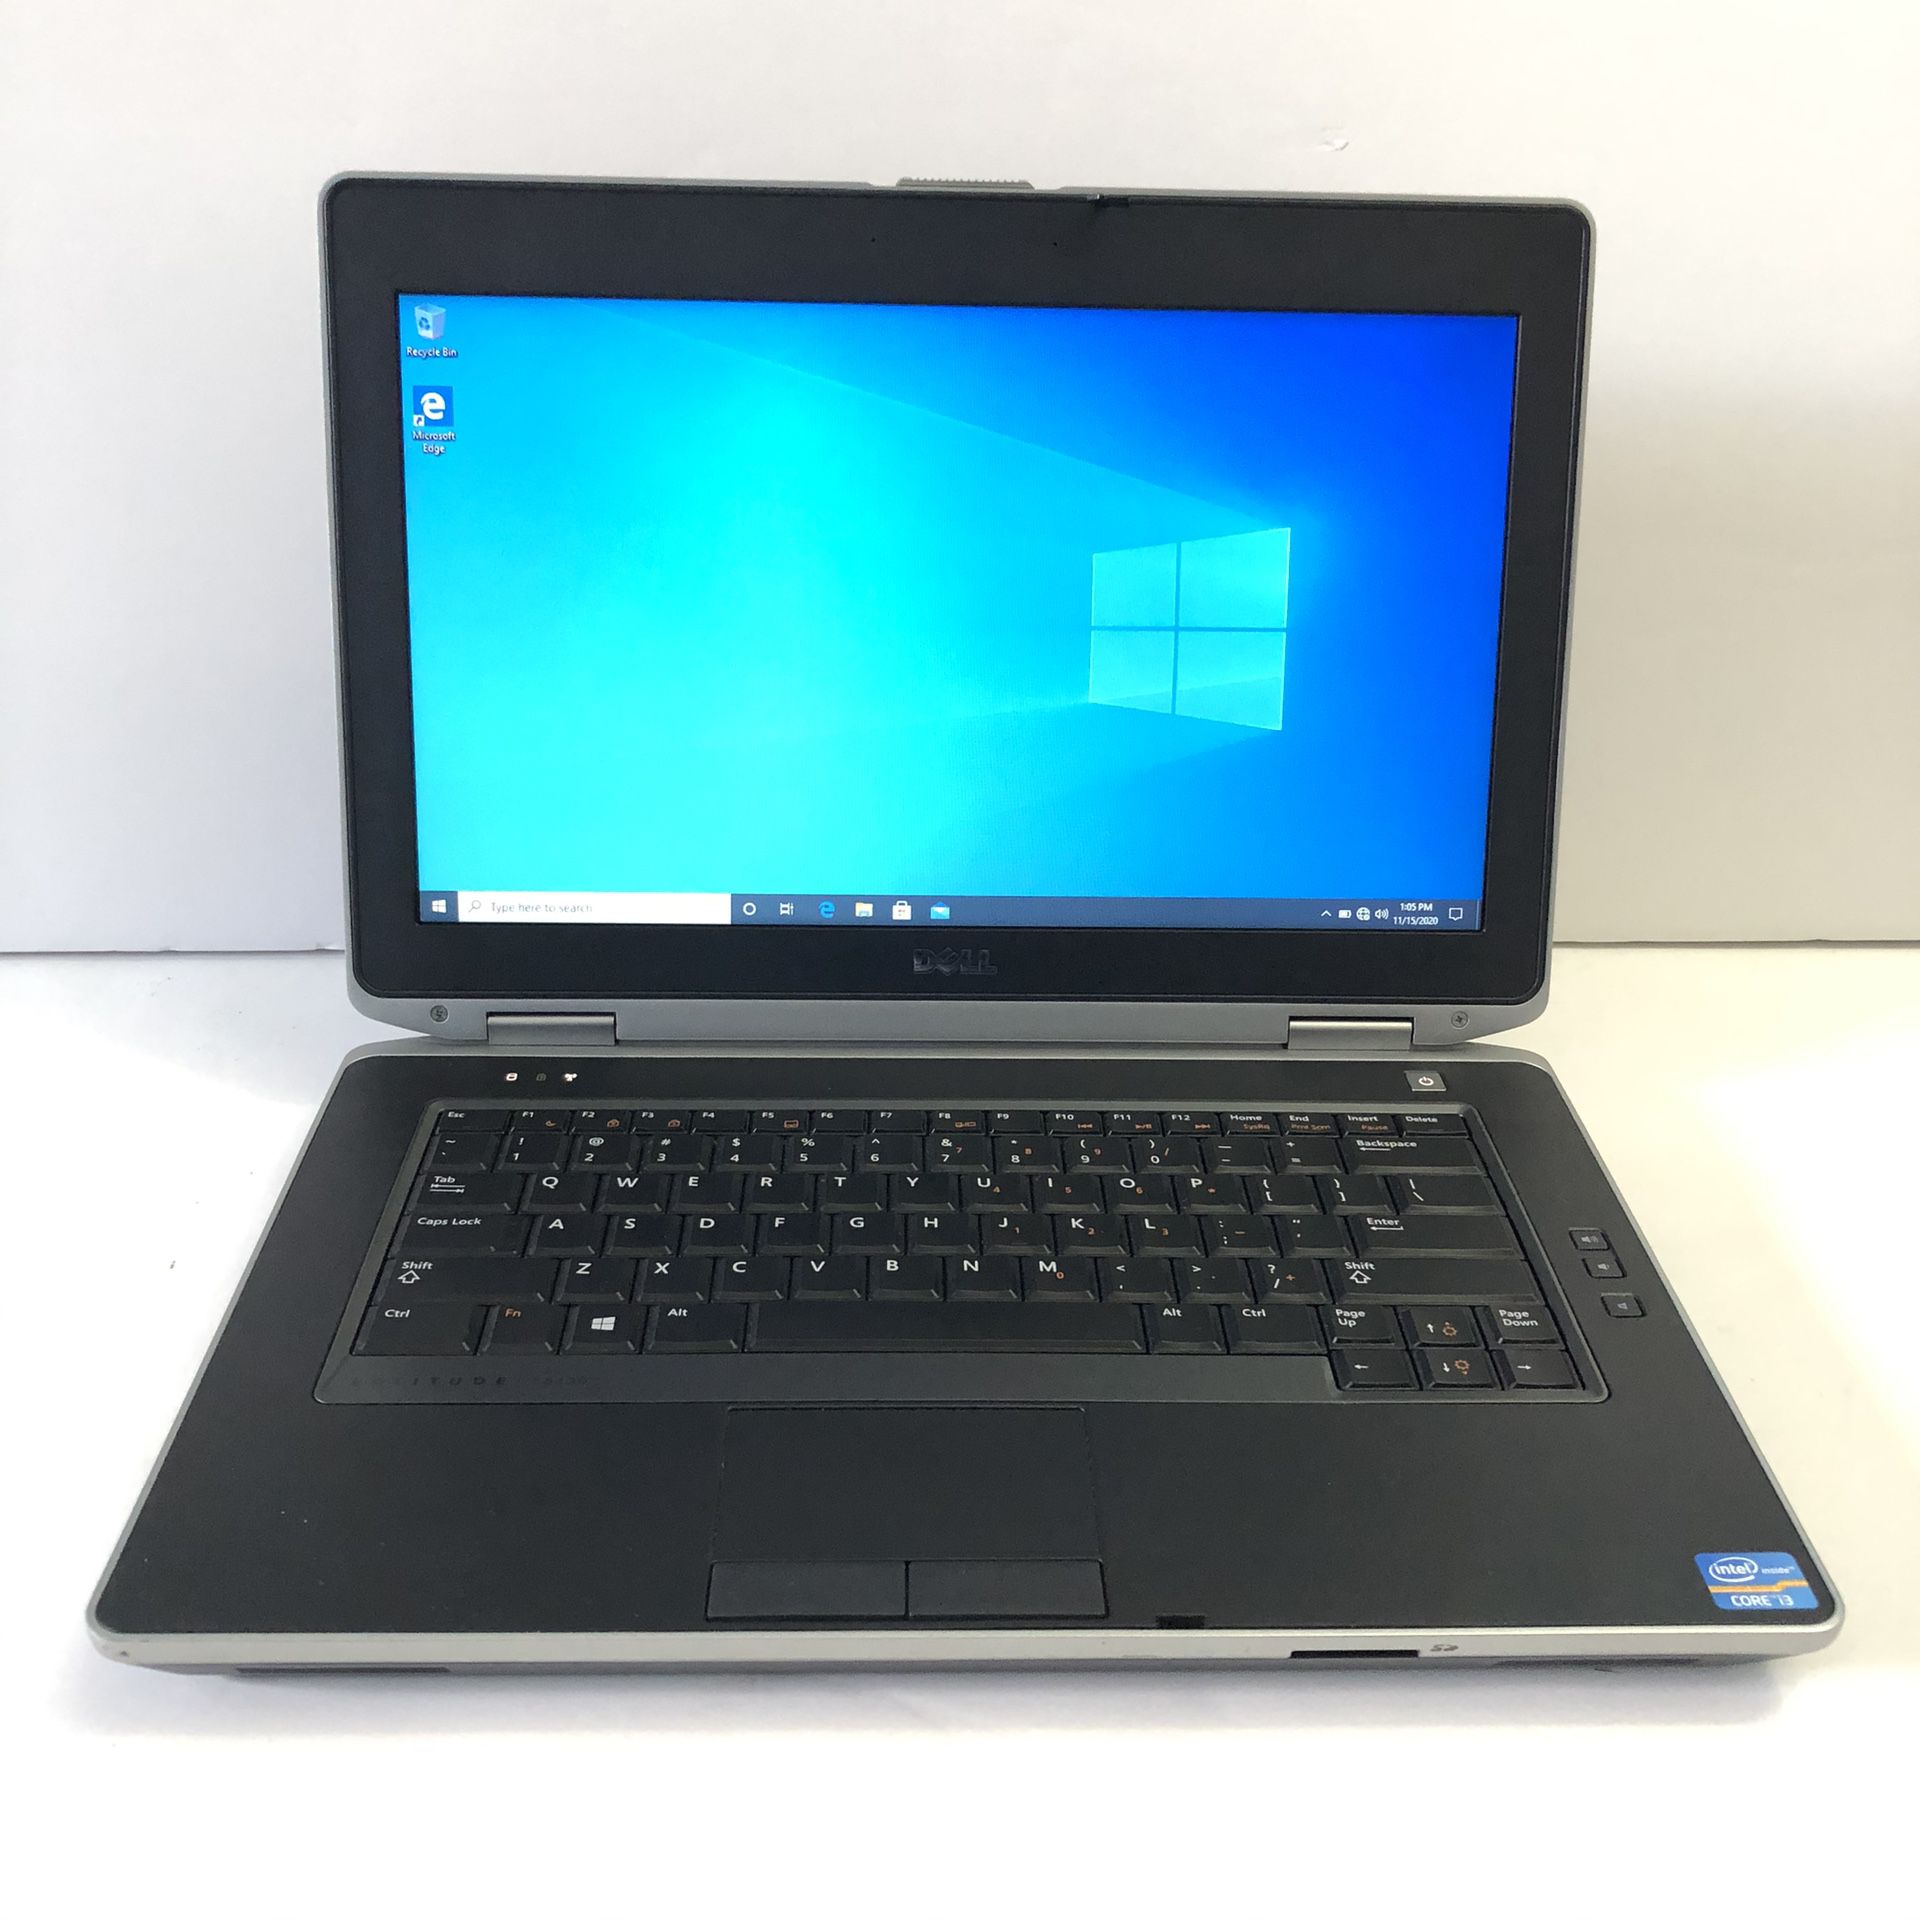 Dell Latitude E6430 i3 Quad Core Windows 10, 2GB, 250GB Laptop in Excellent Condition